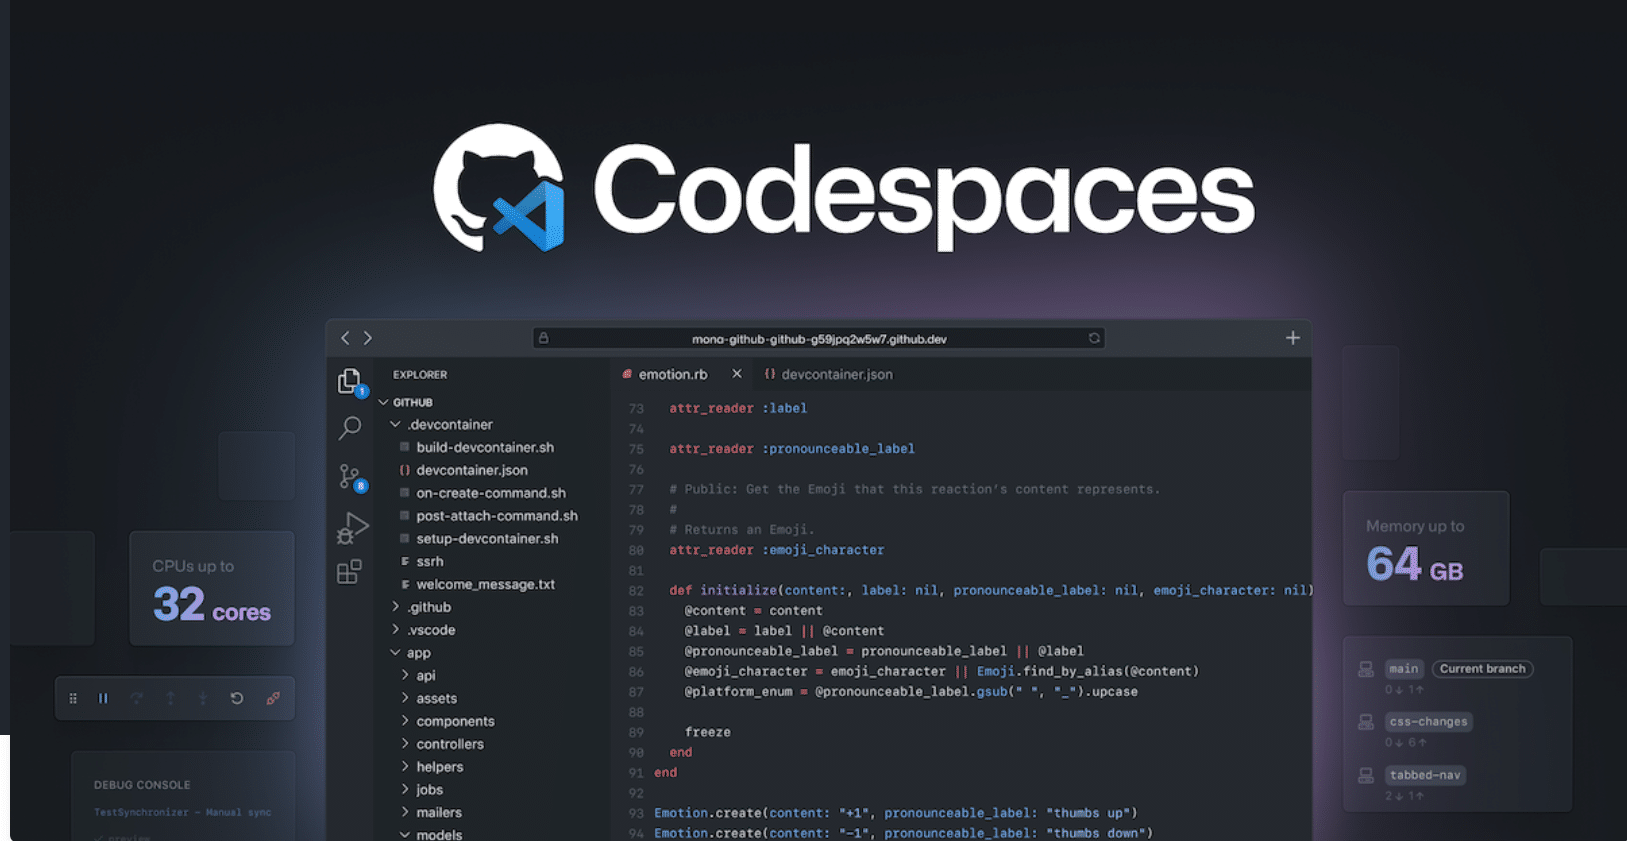 GitHub anuncia versão beta pública das pré-criações do Codespaces